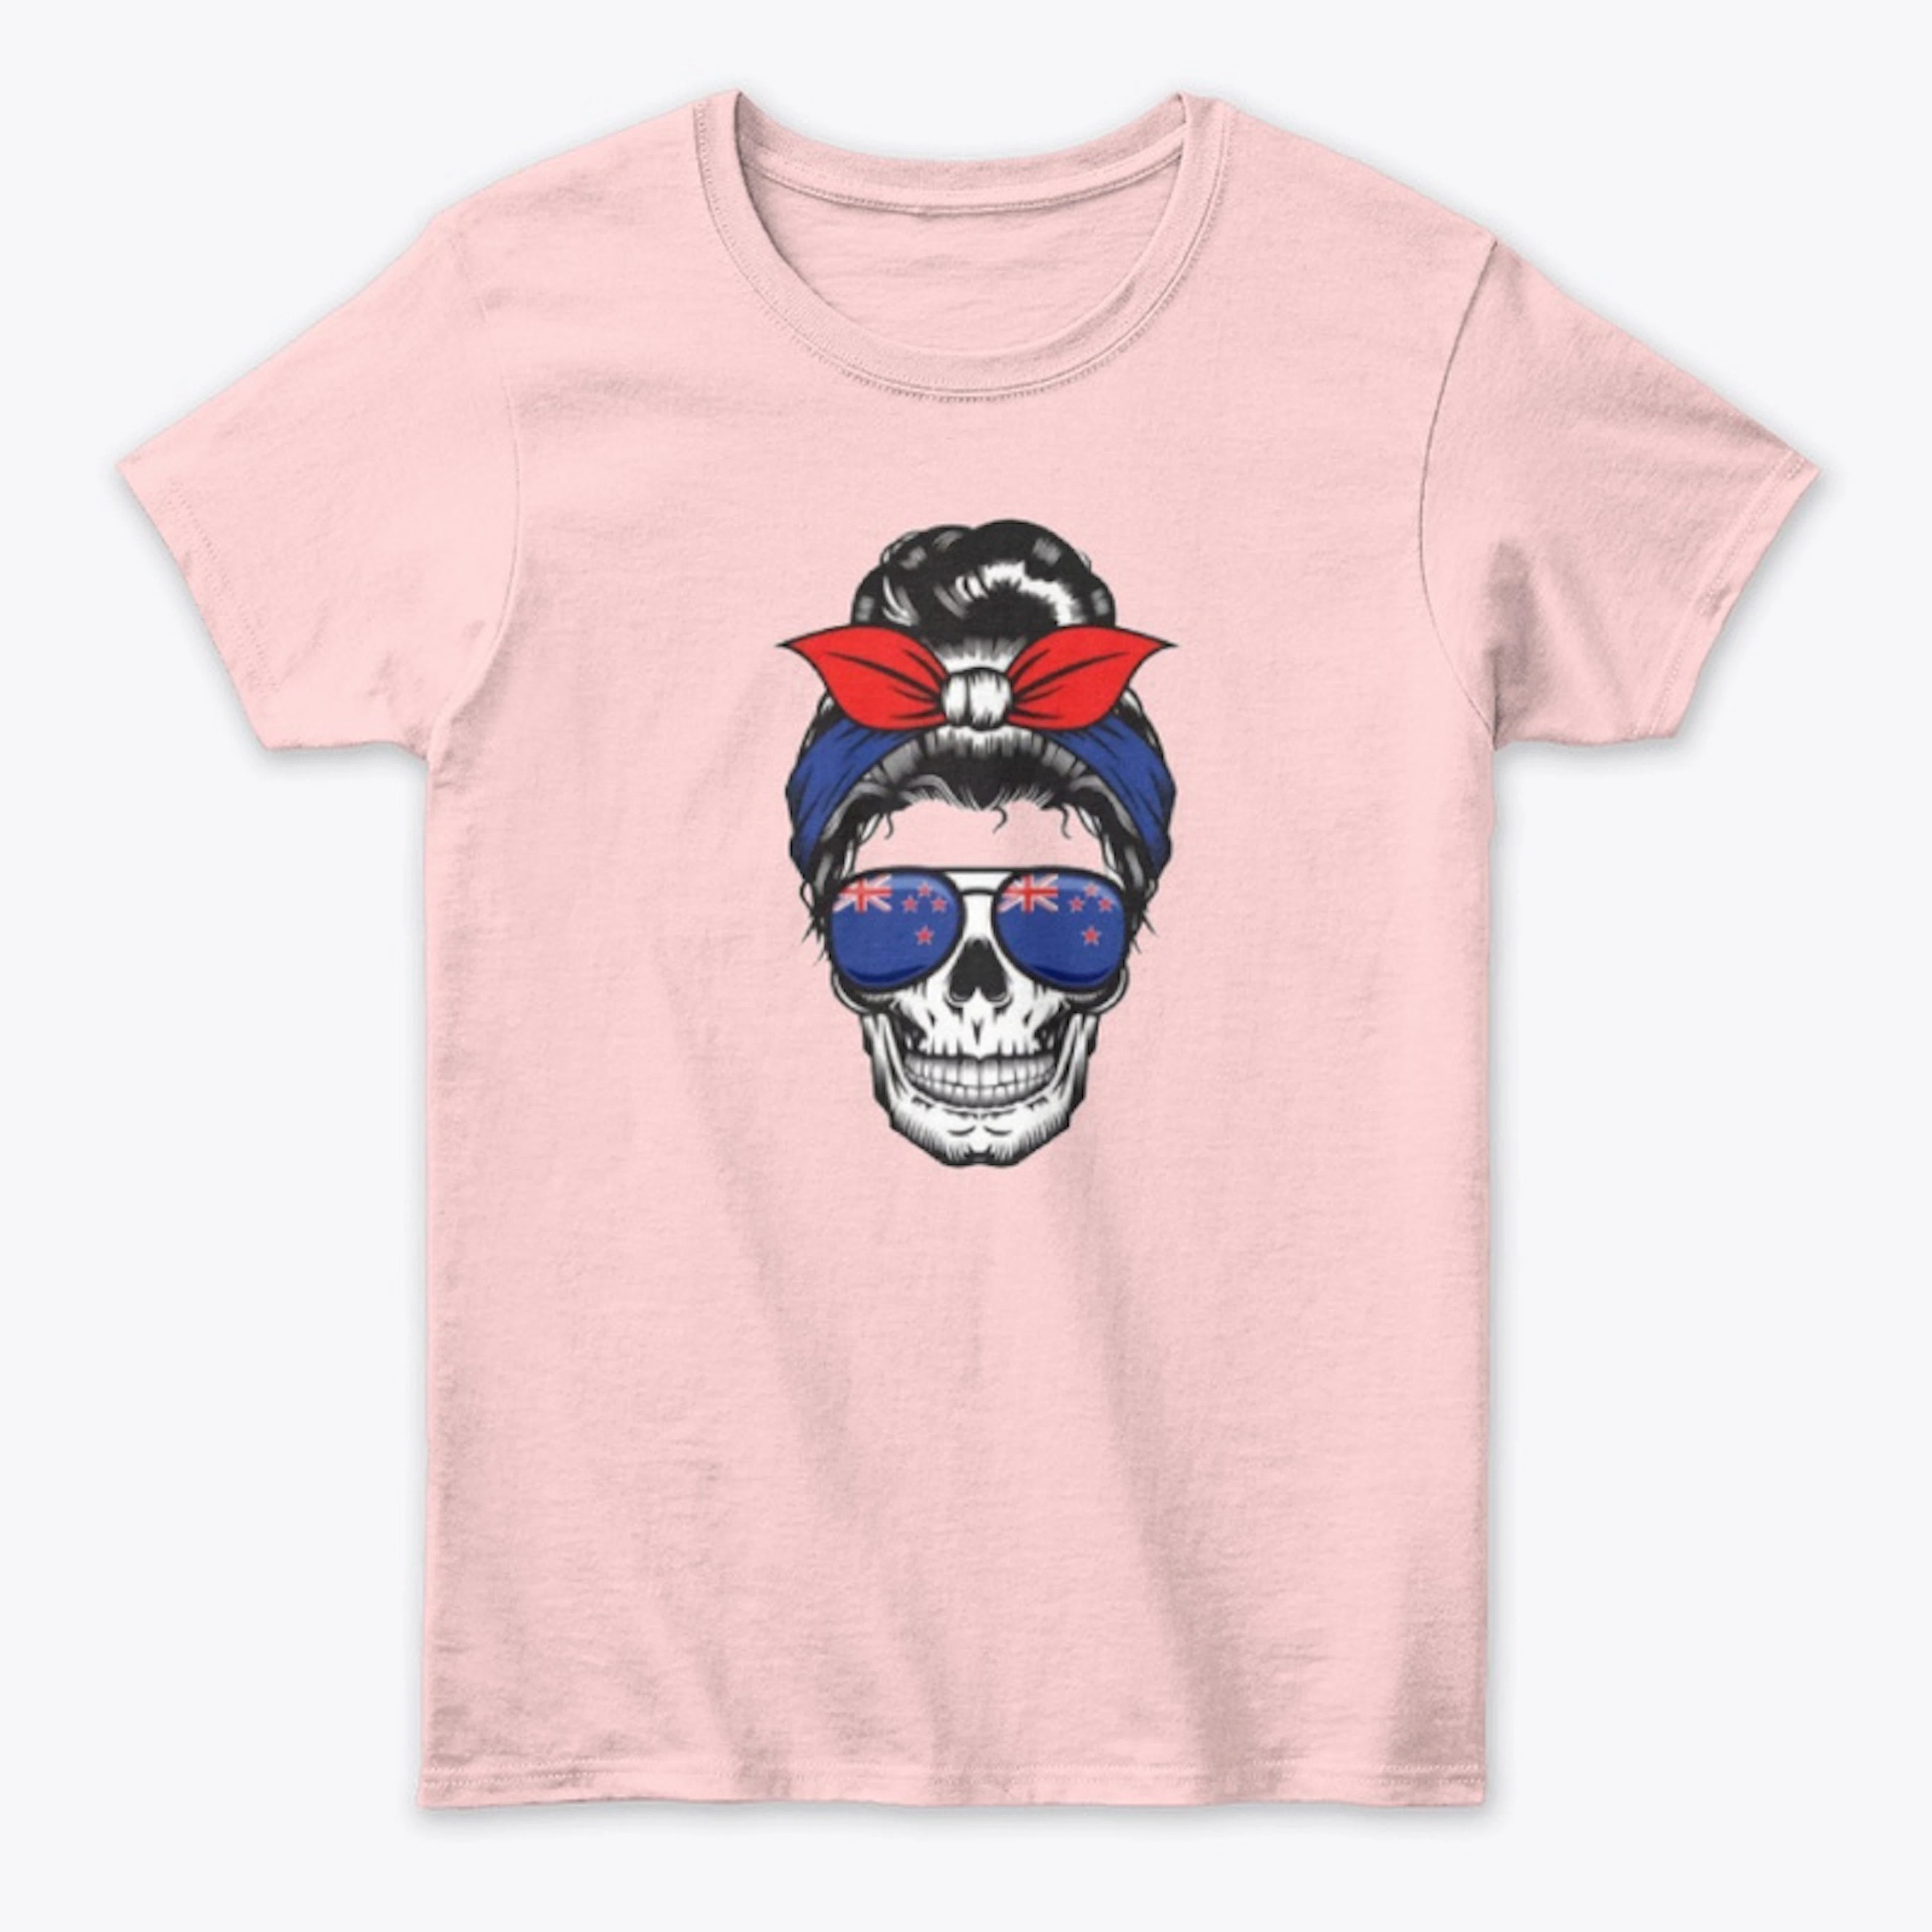 Women - Australian hipster t-shirt